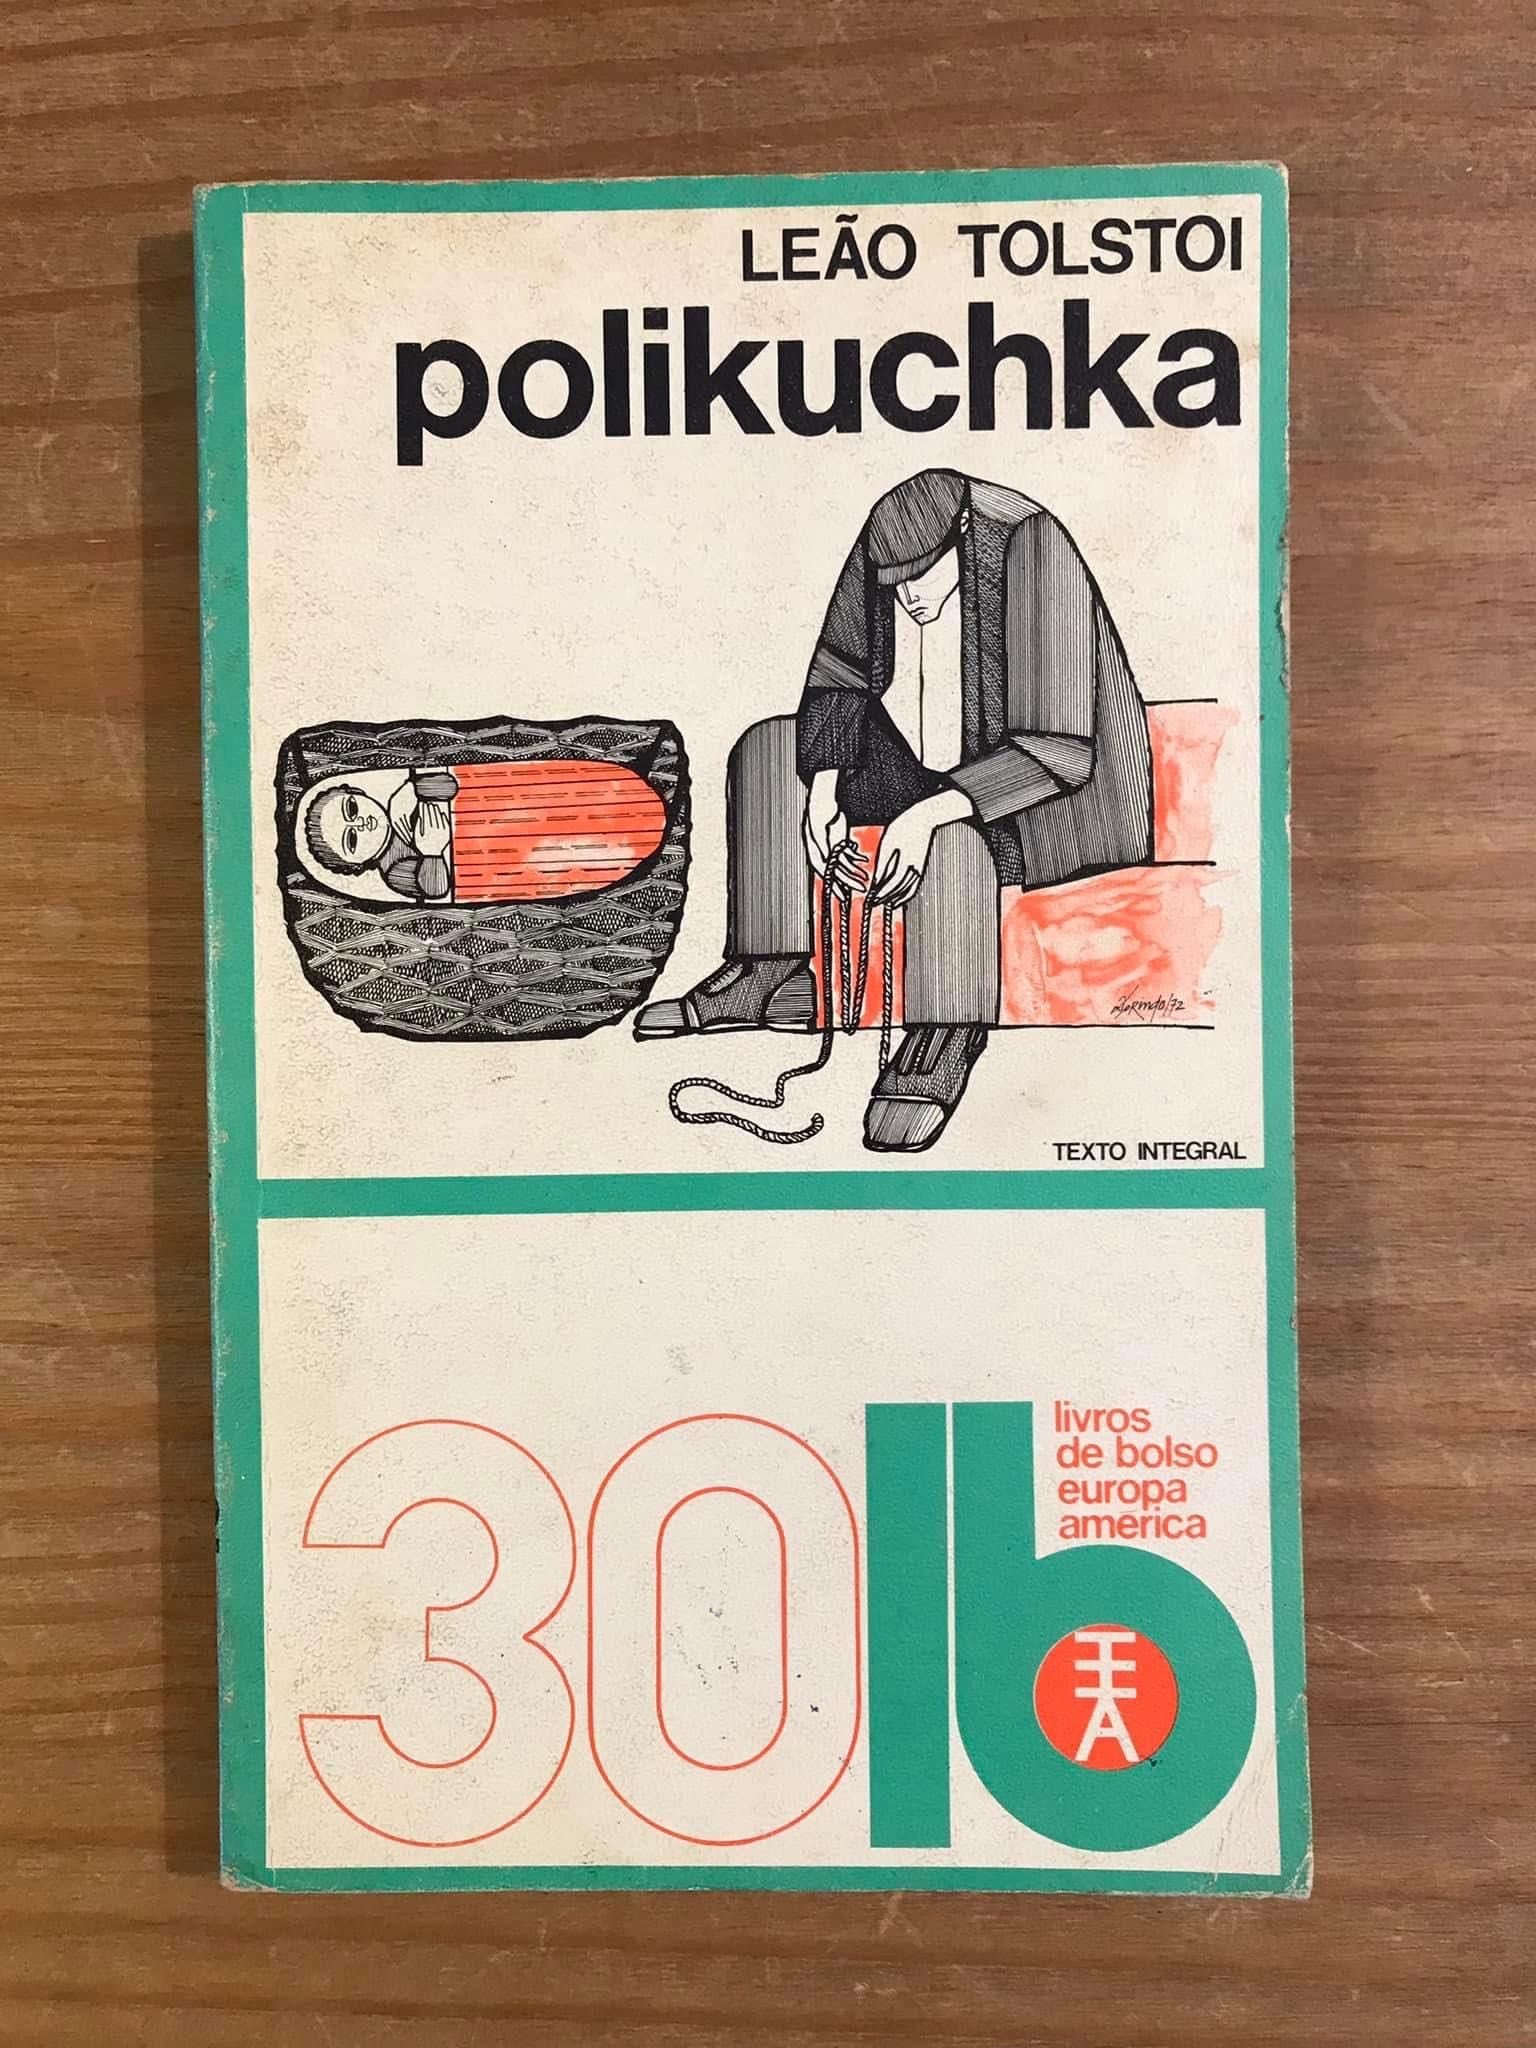 Polikuchka - Tolstoi (portes grátis)